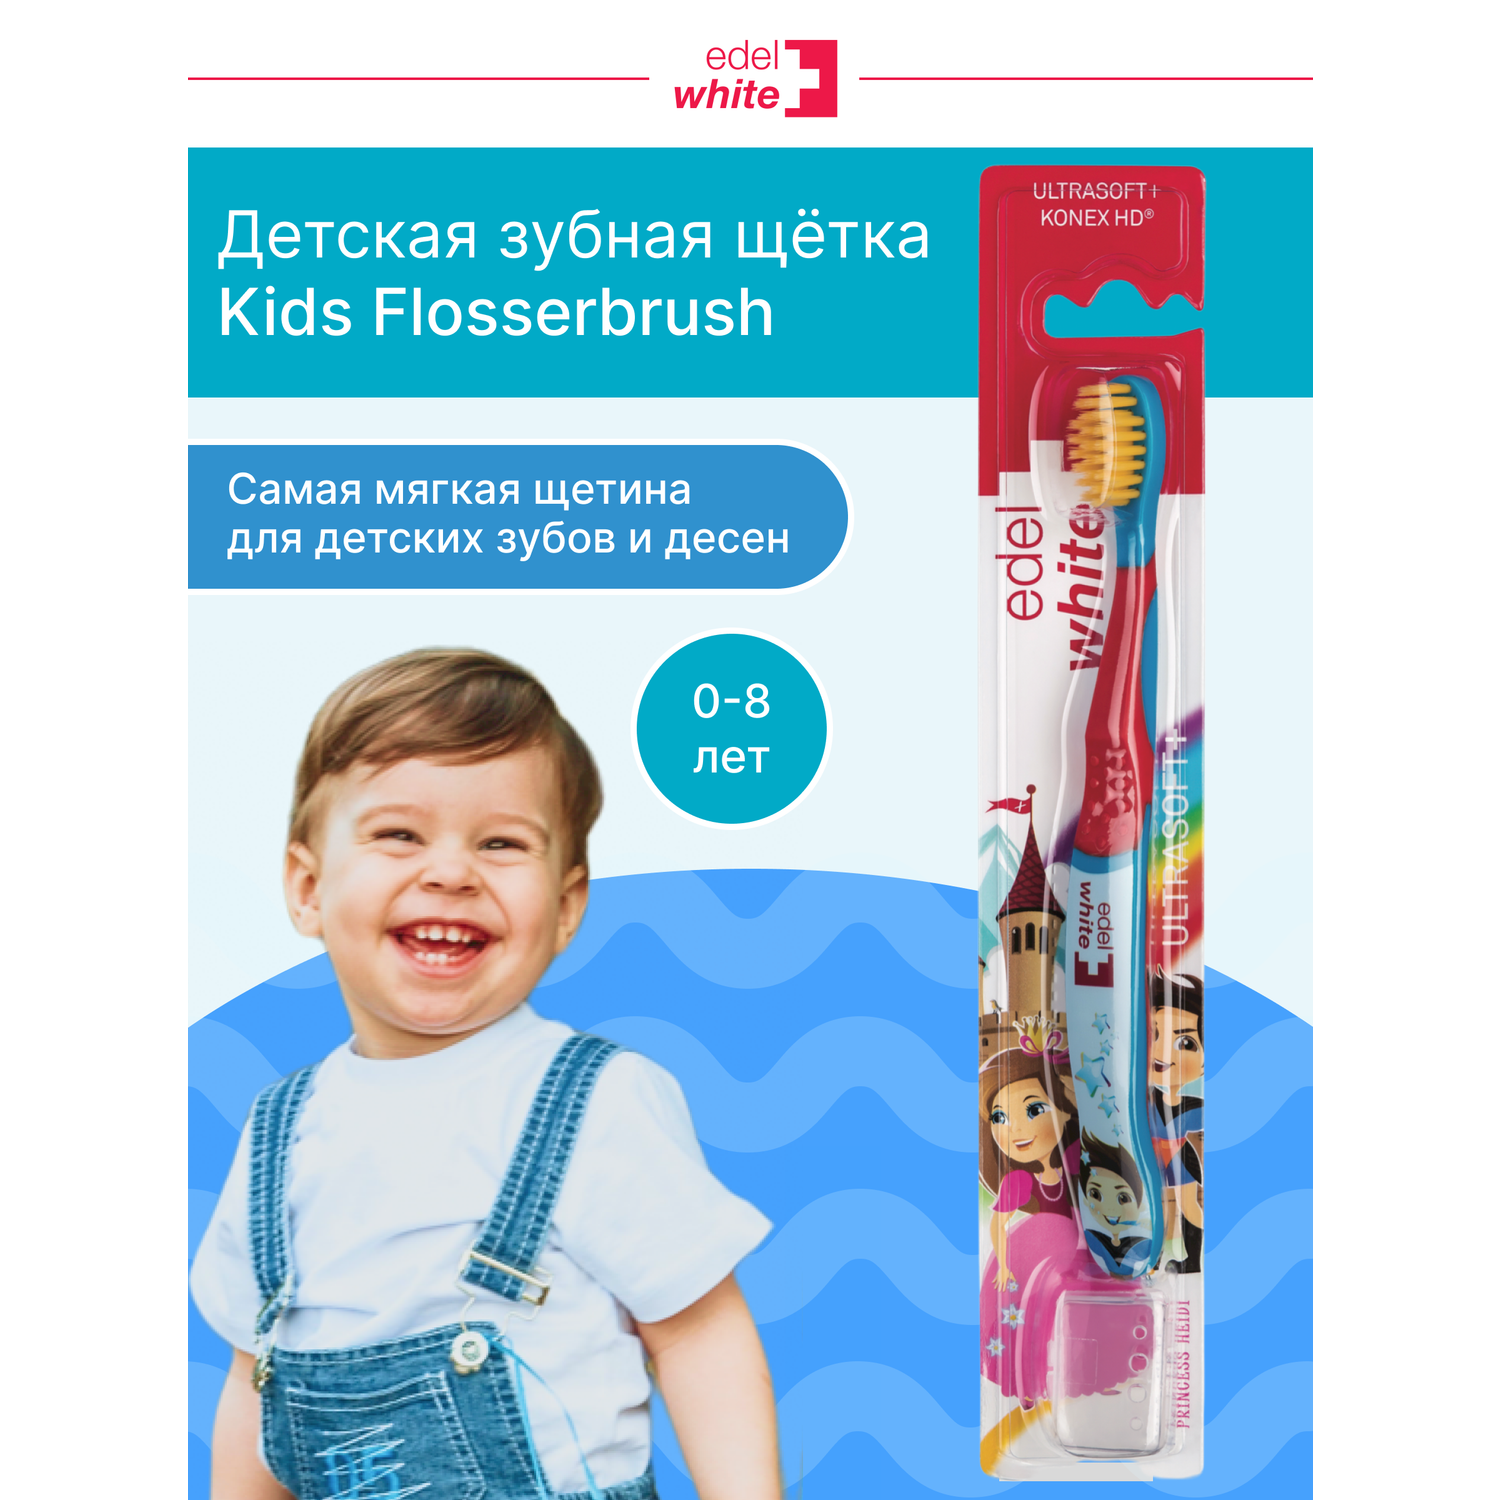 Детская зубная щетка edel+white Flosserbrush Ультрамягкая с защитным колпачком От 0 до 8 лет - фото 2